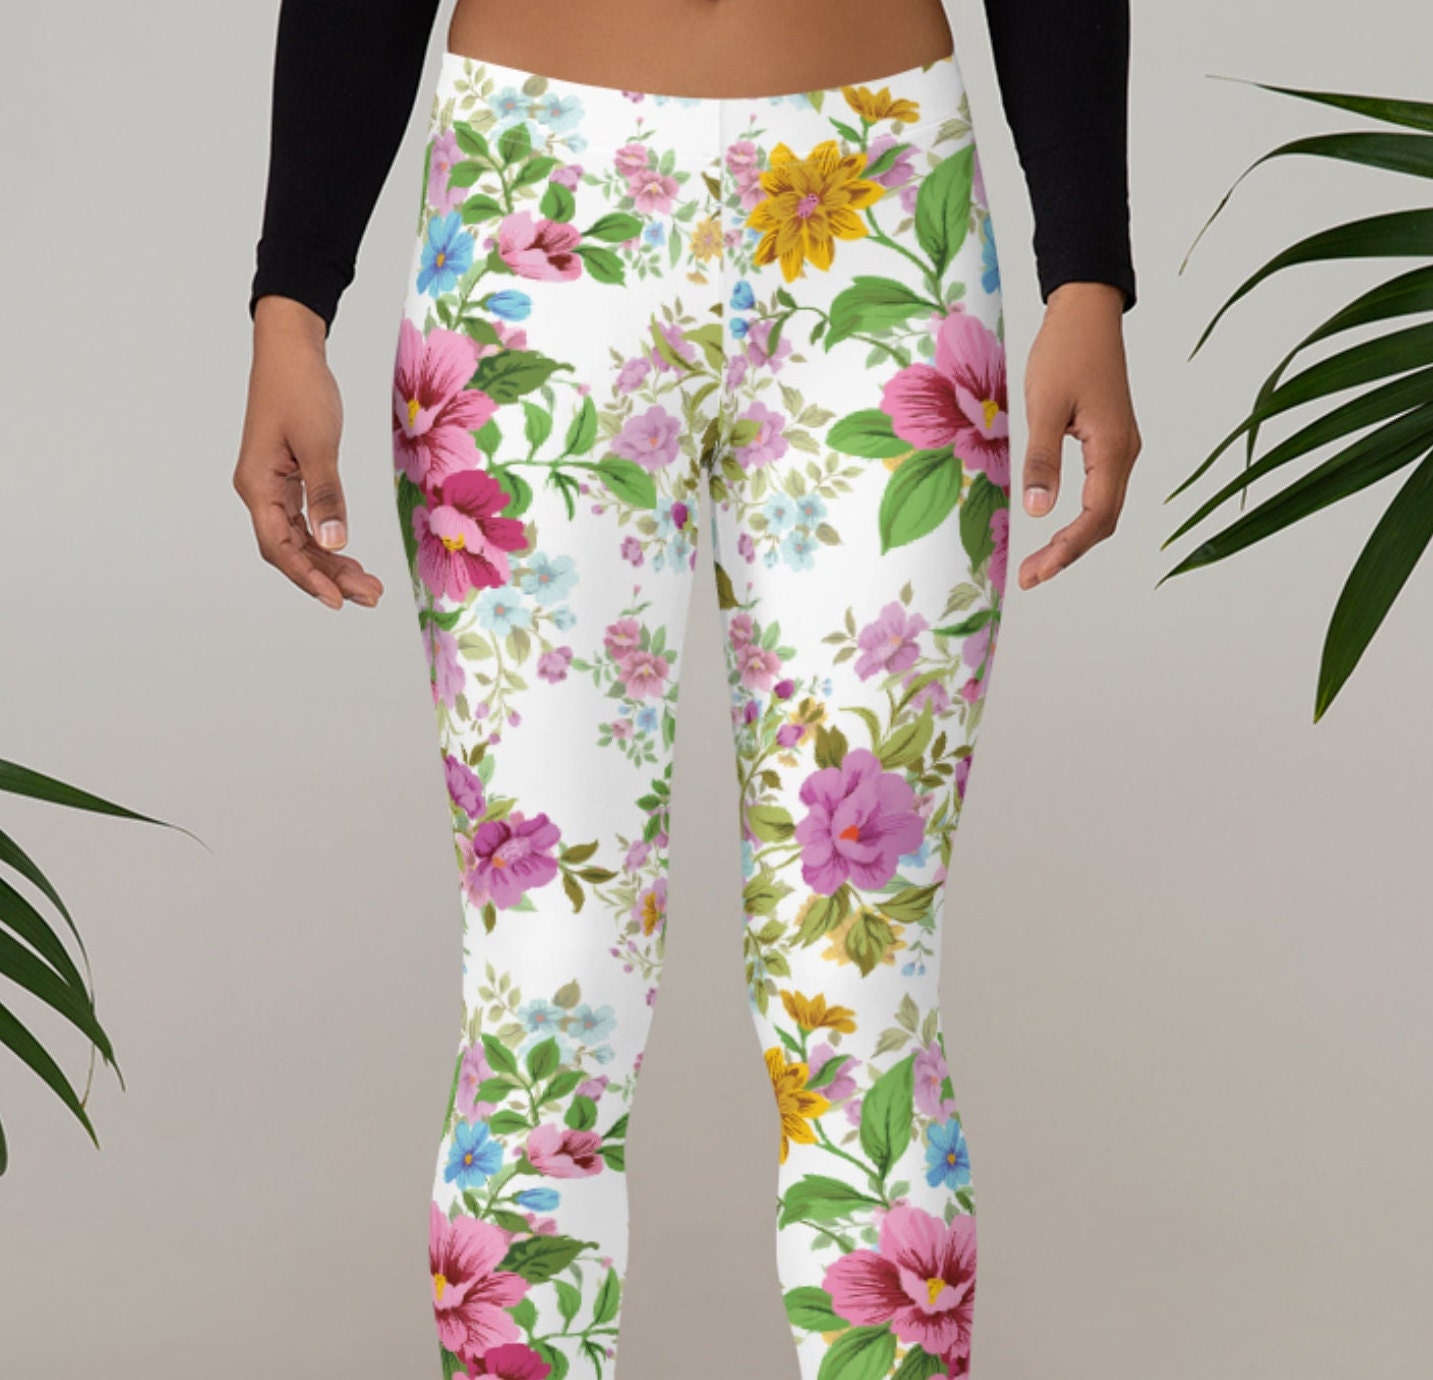 Buy Beautiful Floral Leggings Full Length or Capri, Sizes XS-XL. White  Flower Capri Leggings for Women. P05 Online in India 